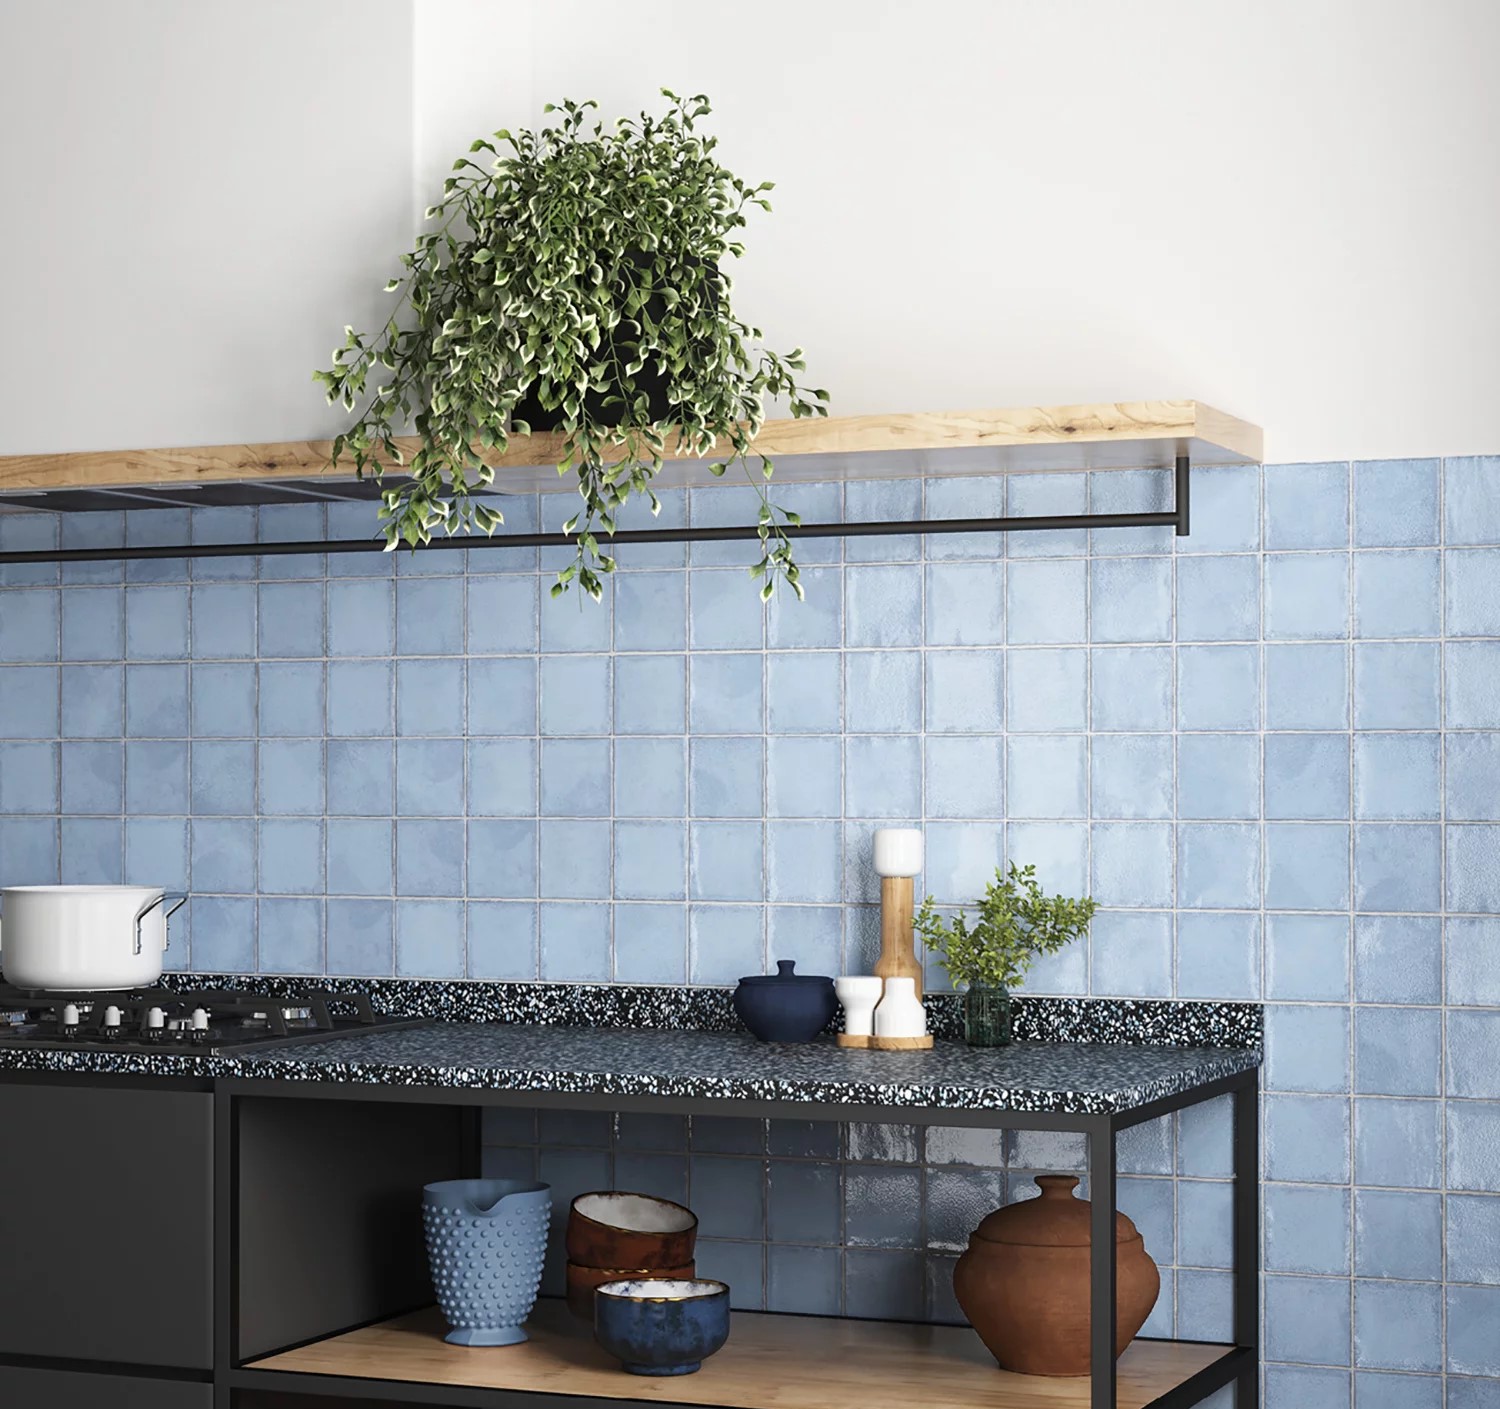 Kuchnia ze ścianą wyłożoną błękitnymi cegiełkami w połysku z czarną szafką i wiszącą półką z kwiatem